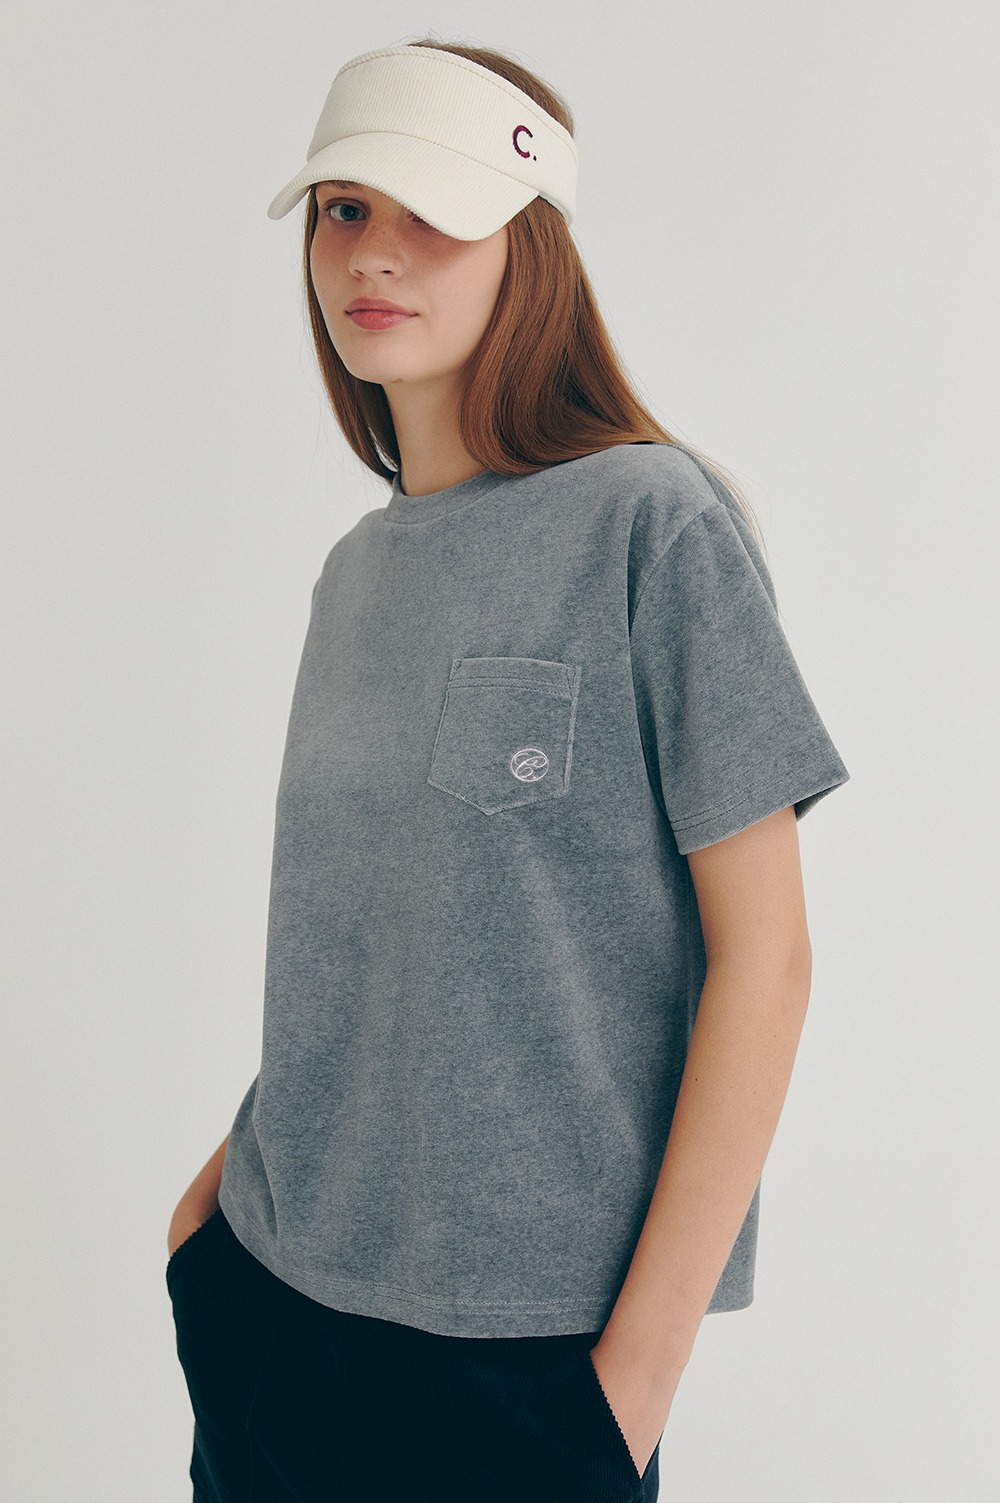 clove - [22FW clove] Velour Pocket T-Shirt_Women (Charcoal)